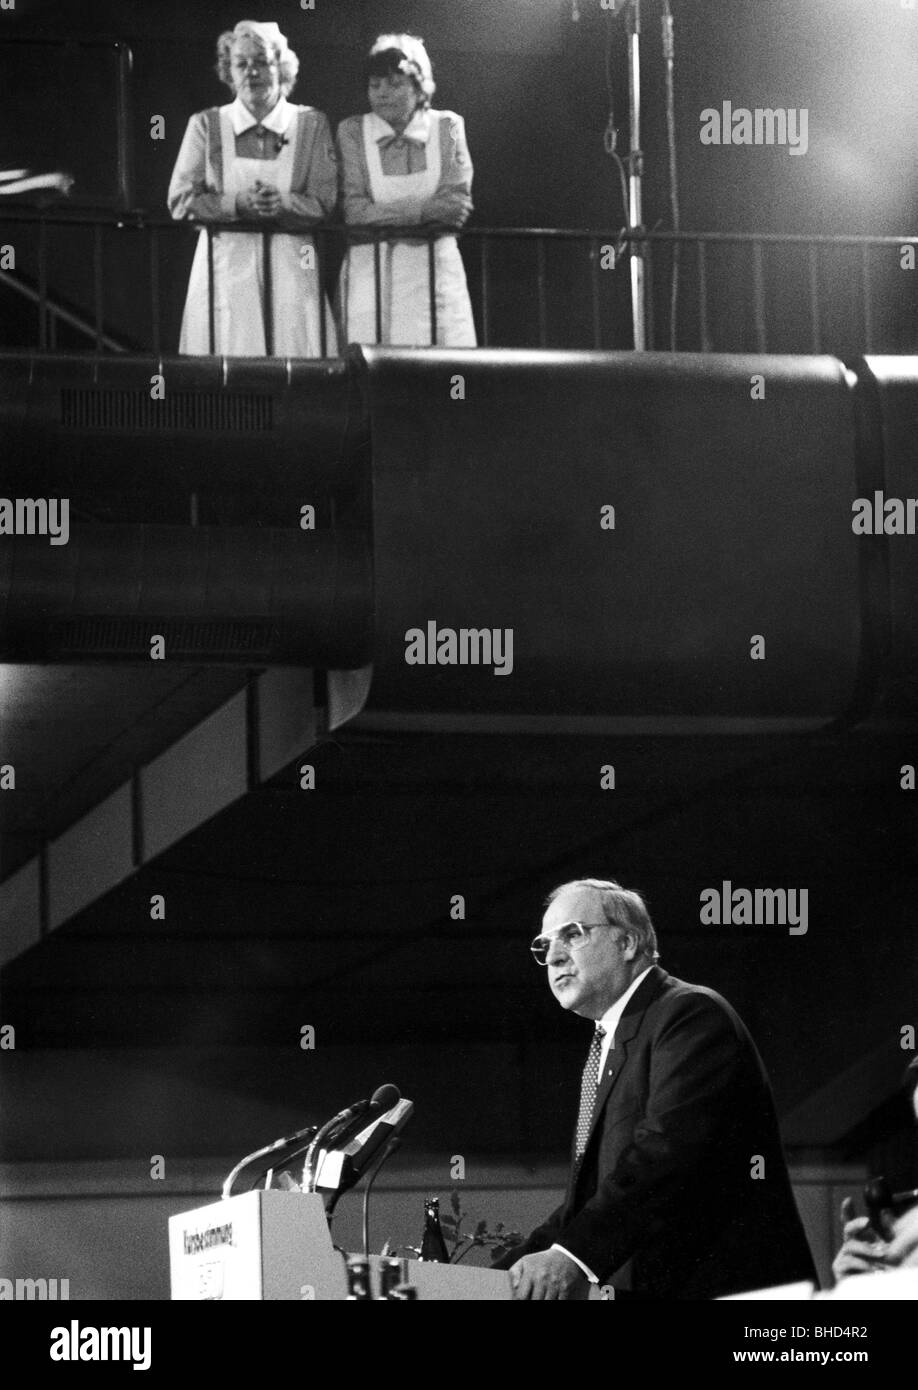 Kohl, Helmut, * 3.4.1930, politico tedesco (CDU), Cancelliere federale 4.10.1982 - 26.10.1998, discorso al raduno del Partito CSU, Monaco, 19.- 20.10.1984, , Foto Stock